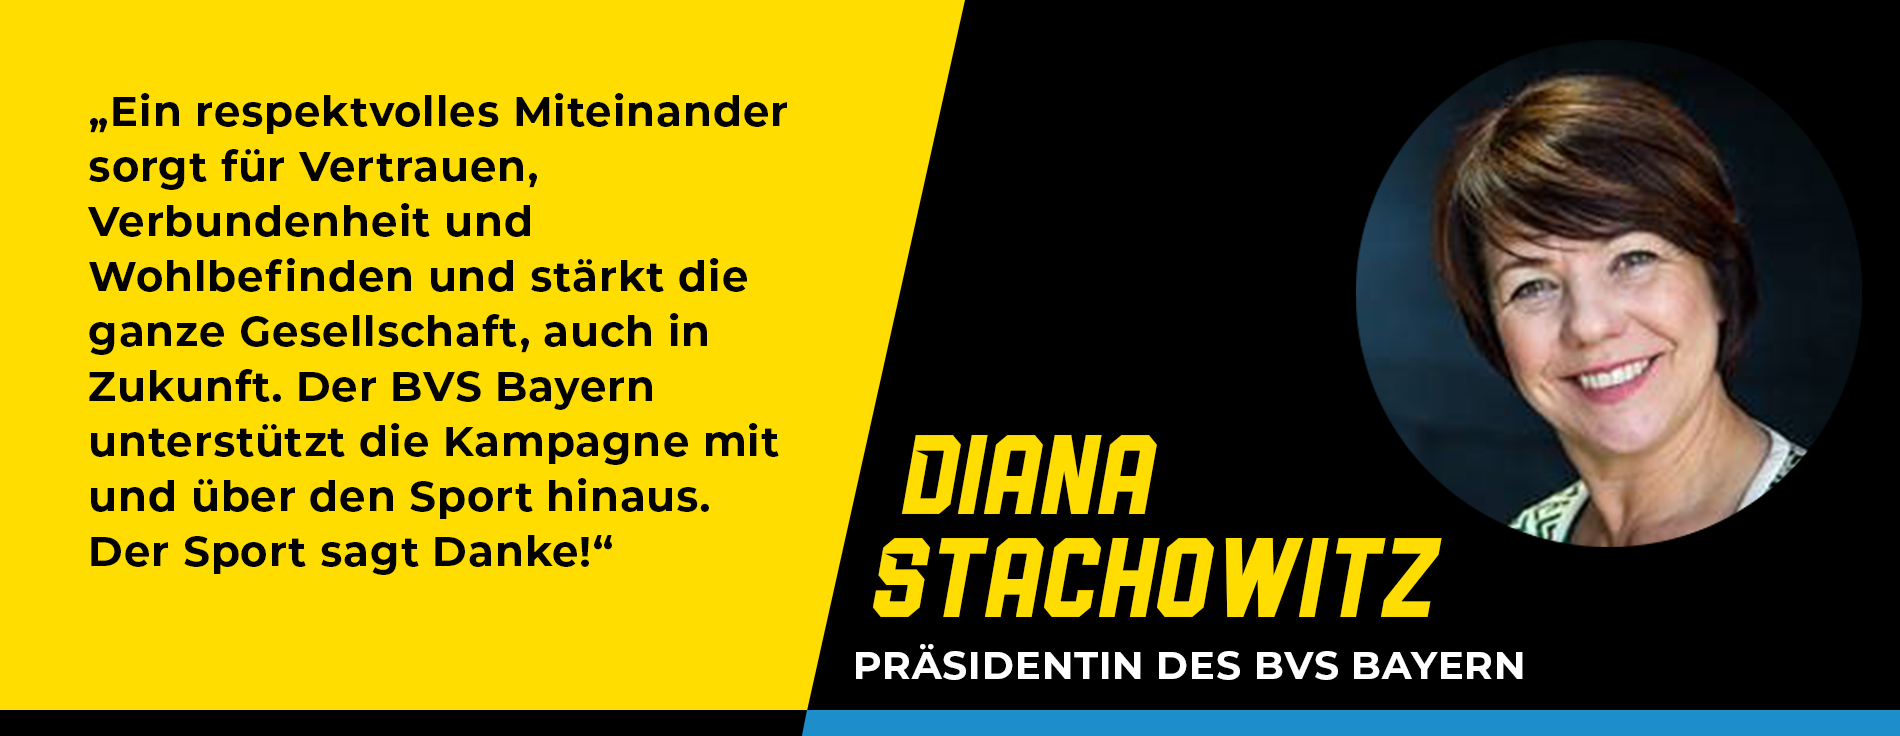 Statement Diana Stachowitz, Präsidentin des BVS Bayern: „Ein respektvolles Miteinander sorgt für Vertrauen, Verbundenheit und Wohlbefinden und stärkt die ganze Gesellschaft, auch in Zukunft. Der BVS Bayern unterstützt die Kampagne mit und über den Sport hinaus. Der Sport sagt Danke!“